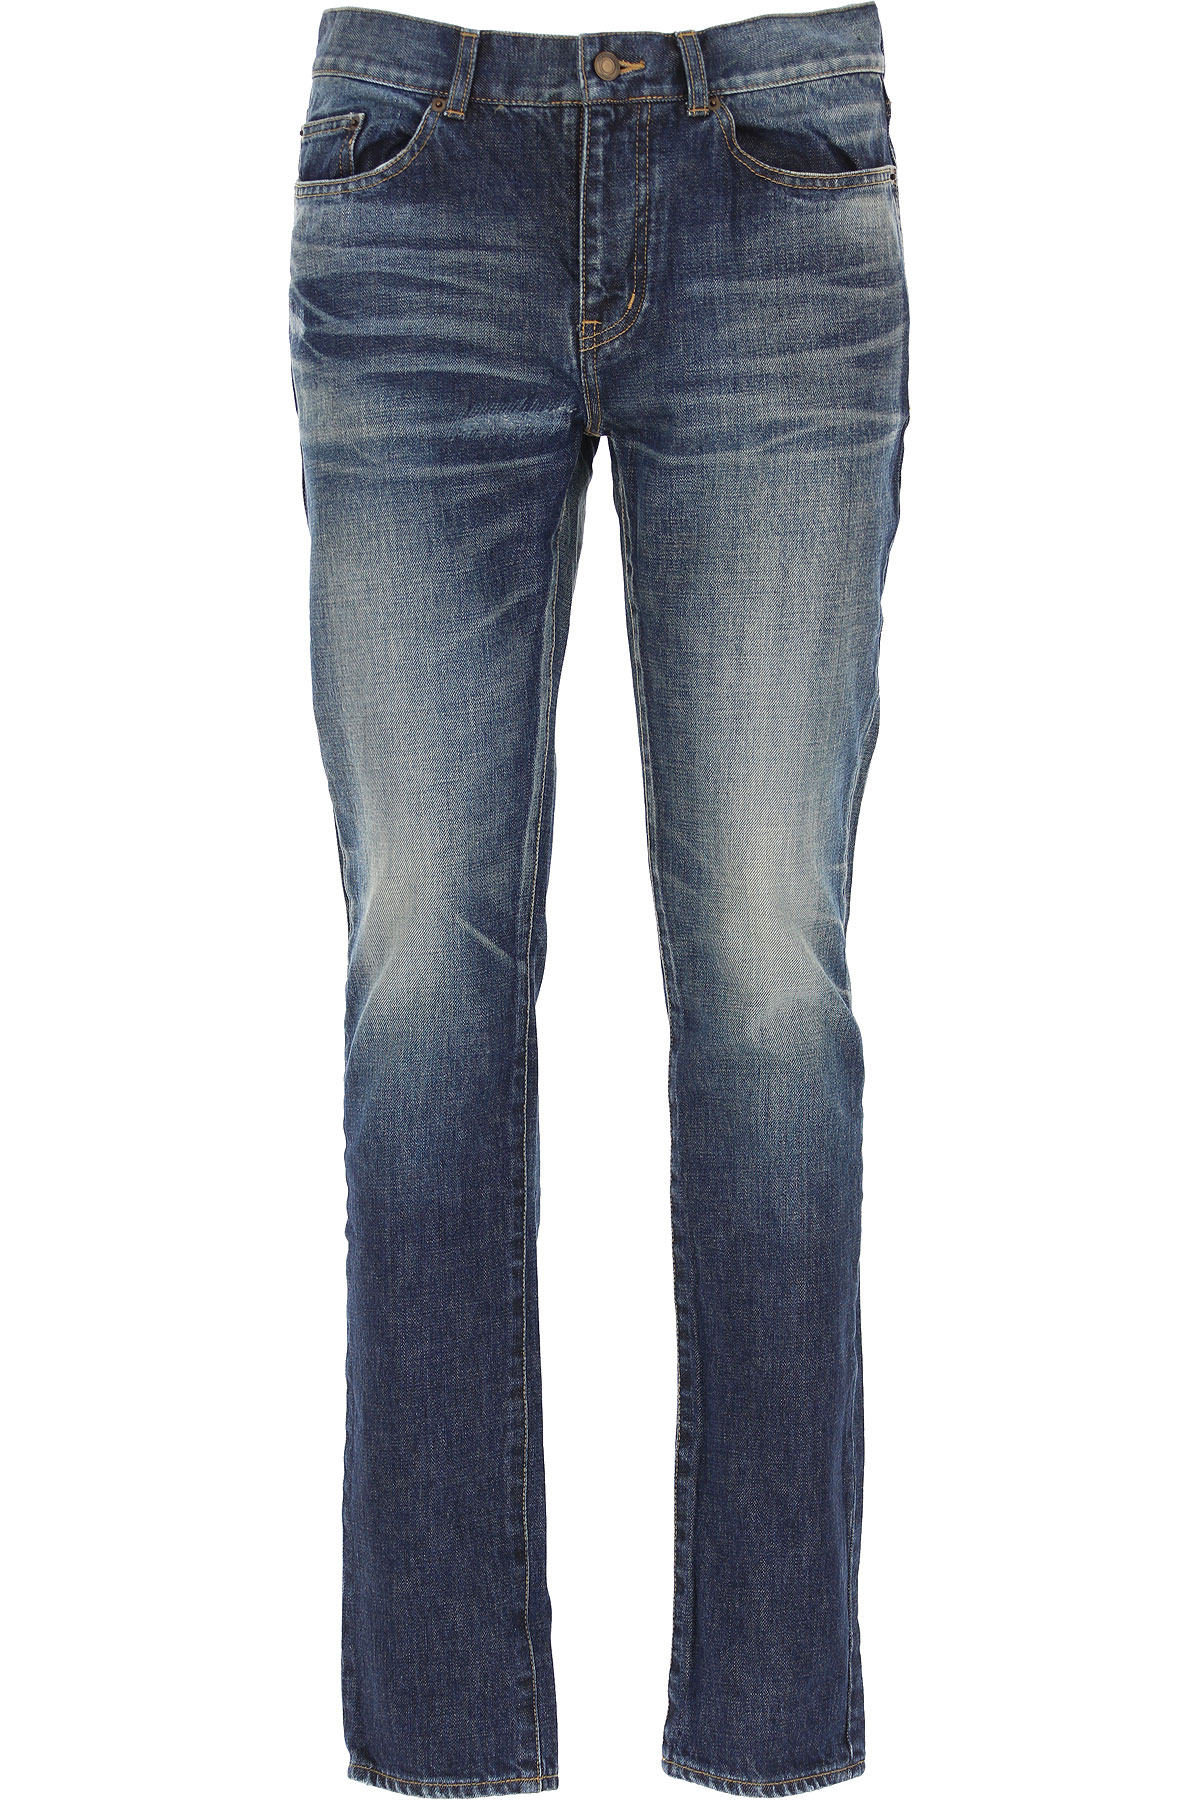 Yves Saint Laurent Jeans, Bluejeans, Denim Jeans für Herren Günstig im Outlet Sale, Dunkelblau, Baumwolle, 2017, 46 48 50